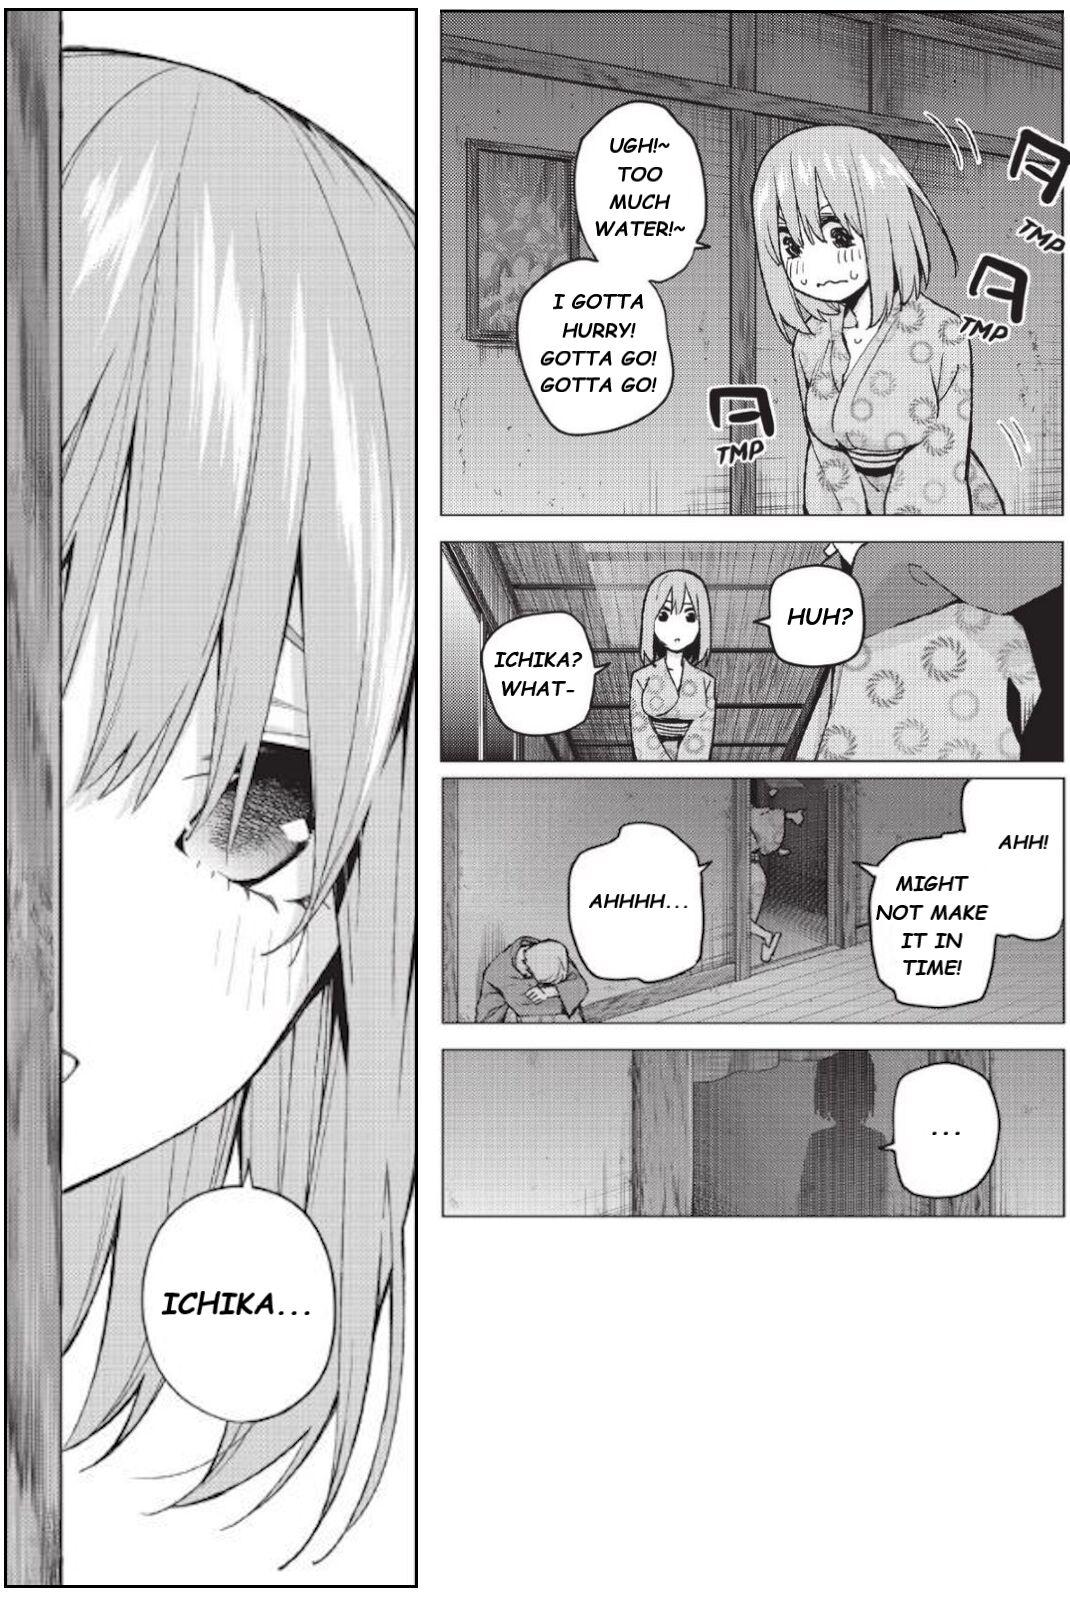 Ichika's Distressing Nightmare 8